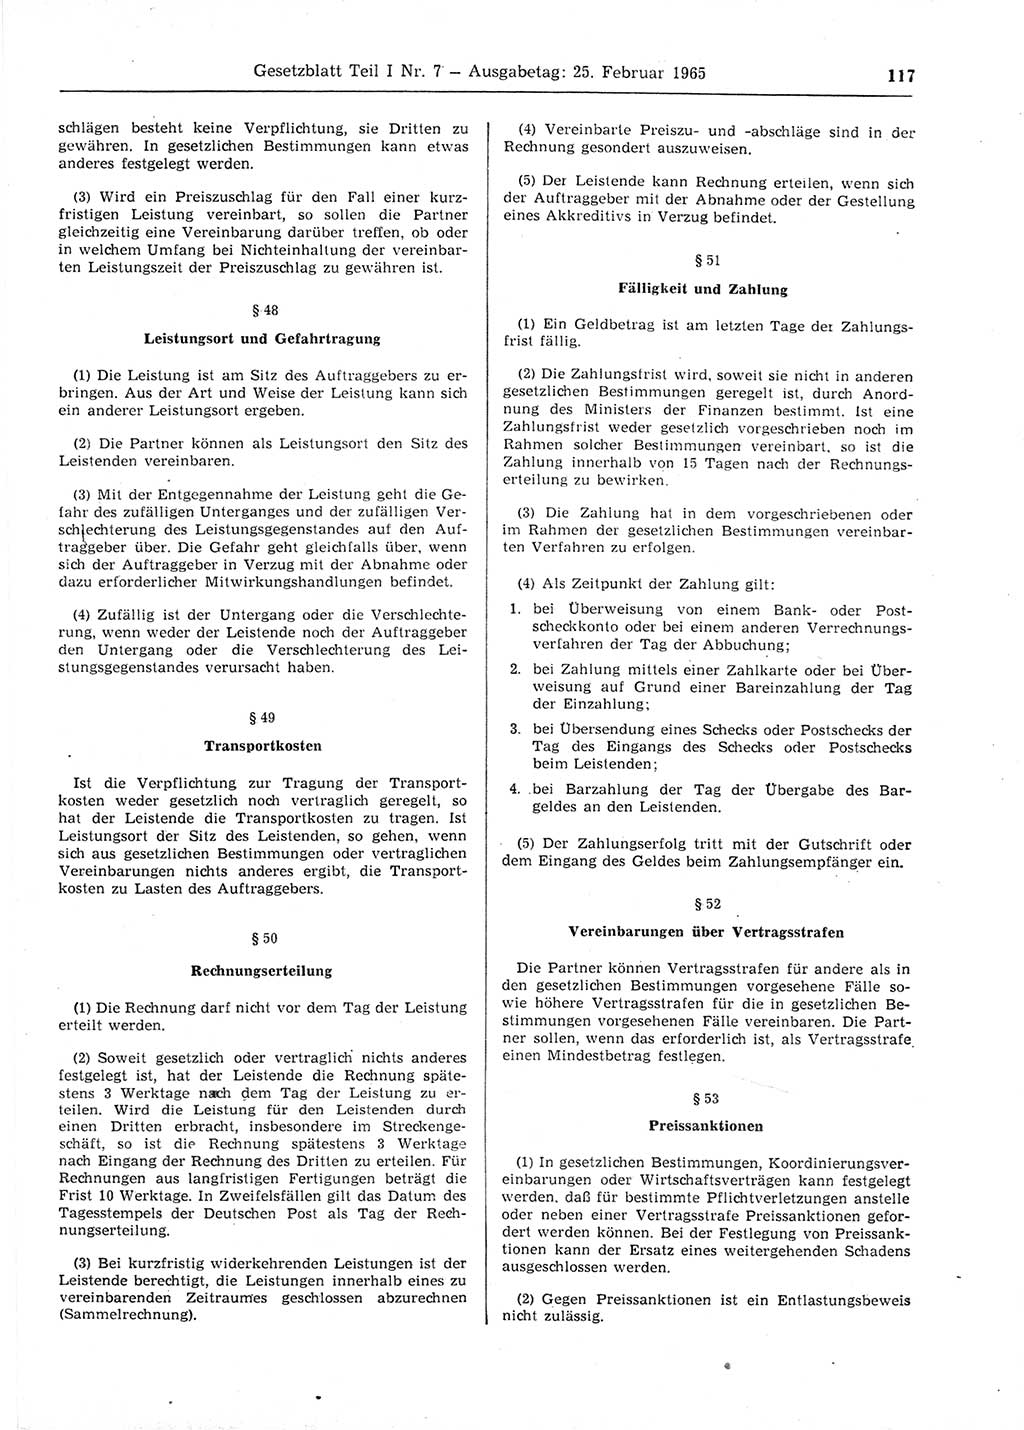 Gesetzblatt (GBl.) der Deutschen Demokratischen Republik (DDR) Teil Ⅰ 1965, Seite 117 (GBl. DDR Ⅰ 1965, S. 117)